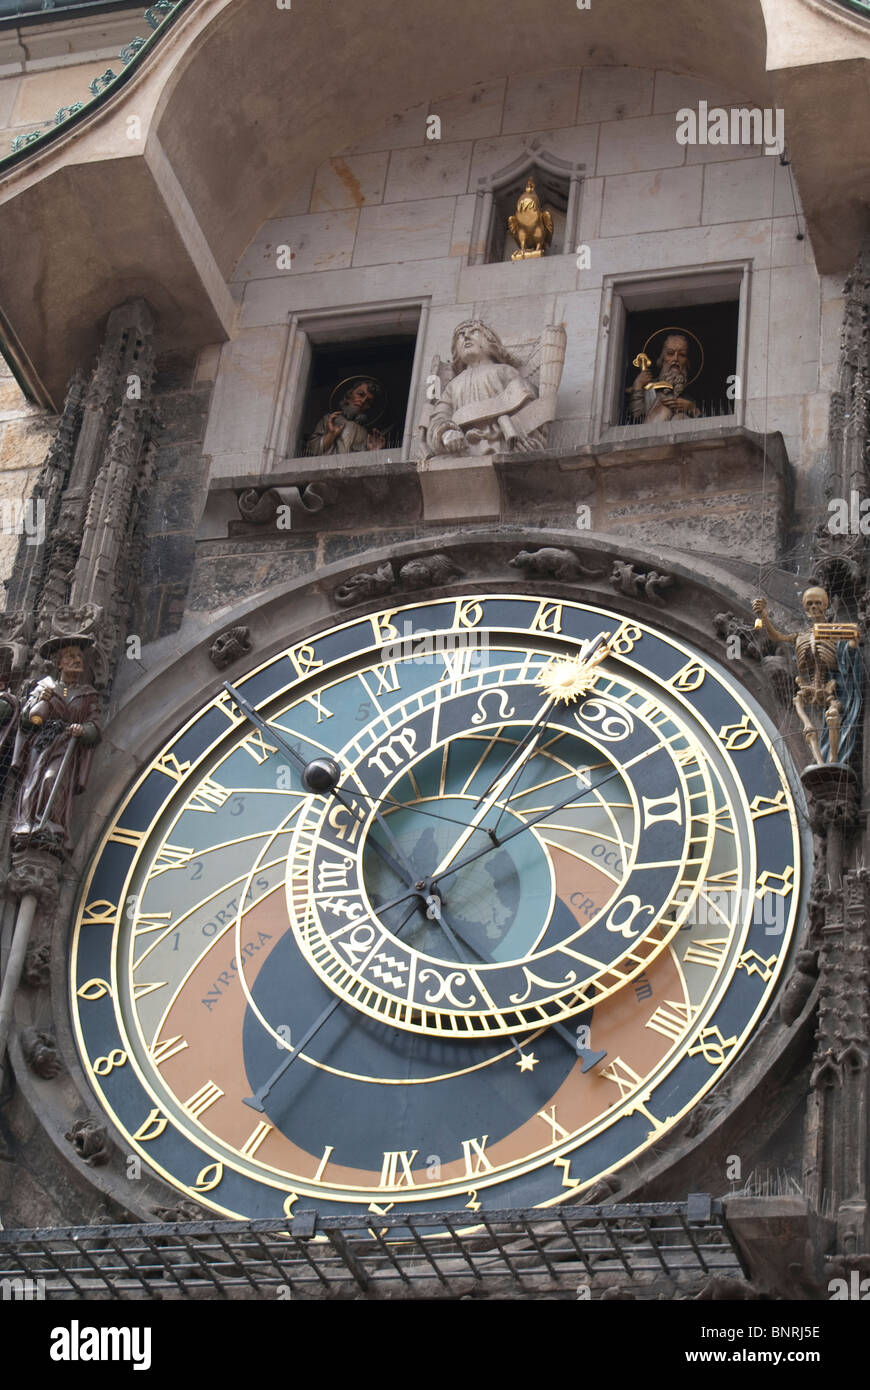 Prazsky Orloj Réveil dans Staromestske Namesti, la place principale de Prague Banque D'Images